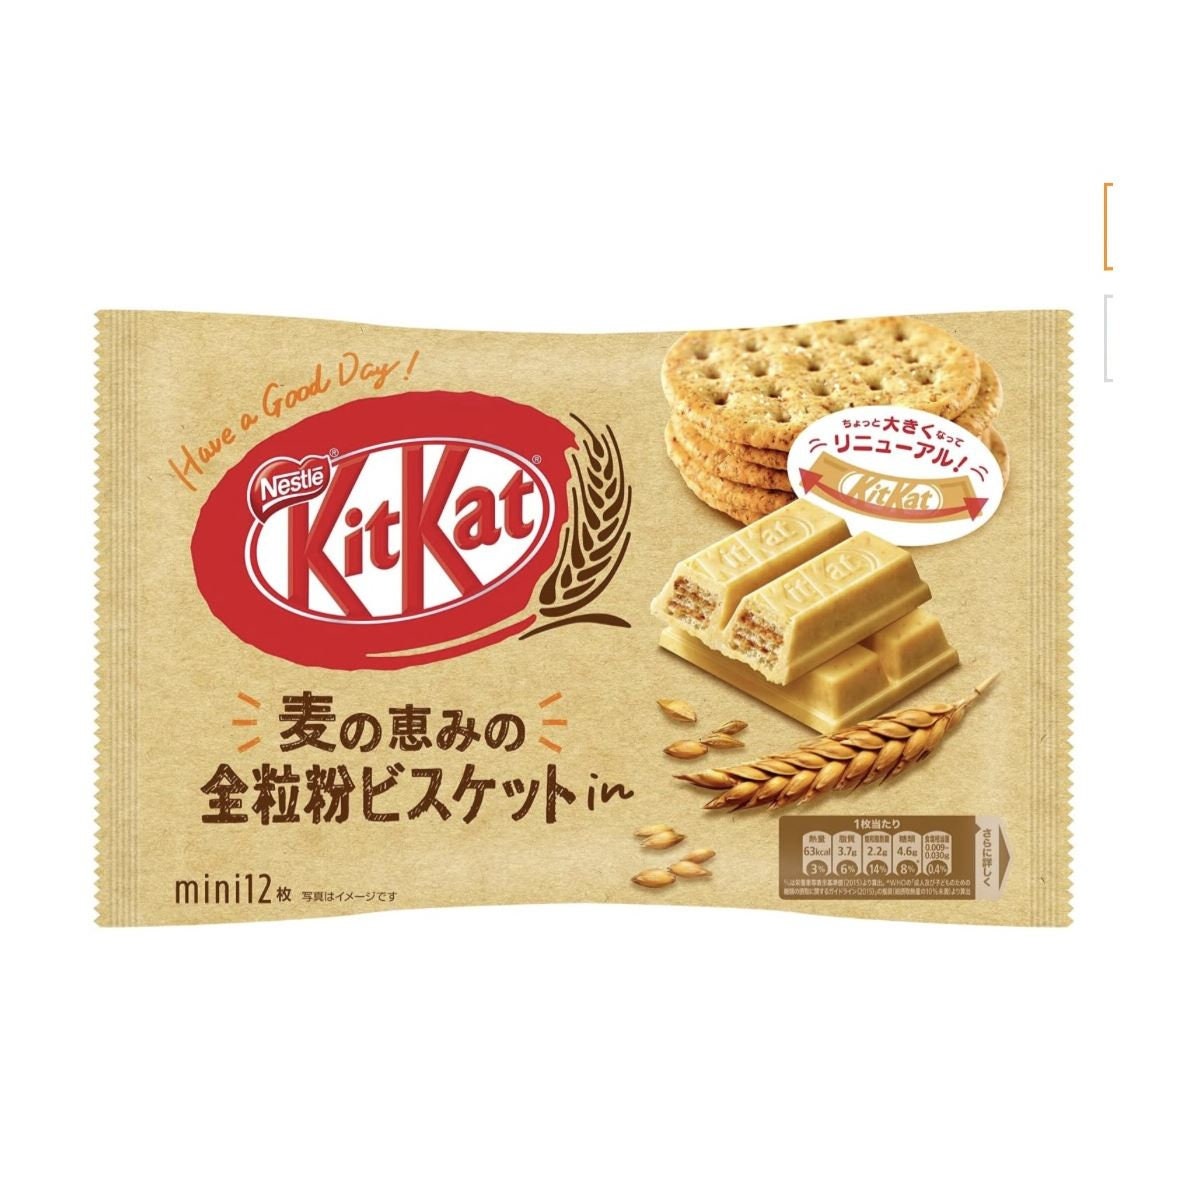 Japanese Kitkat,variety of Kitkat From Japan. Different Flavorsrandom ...